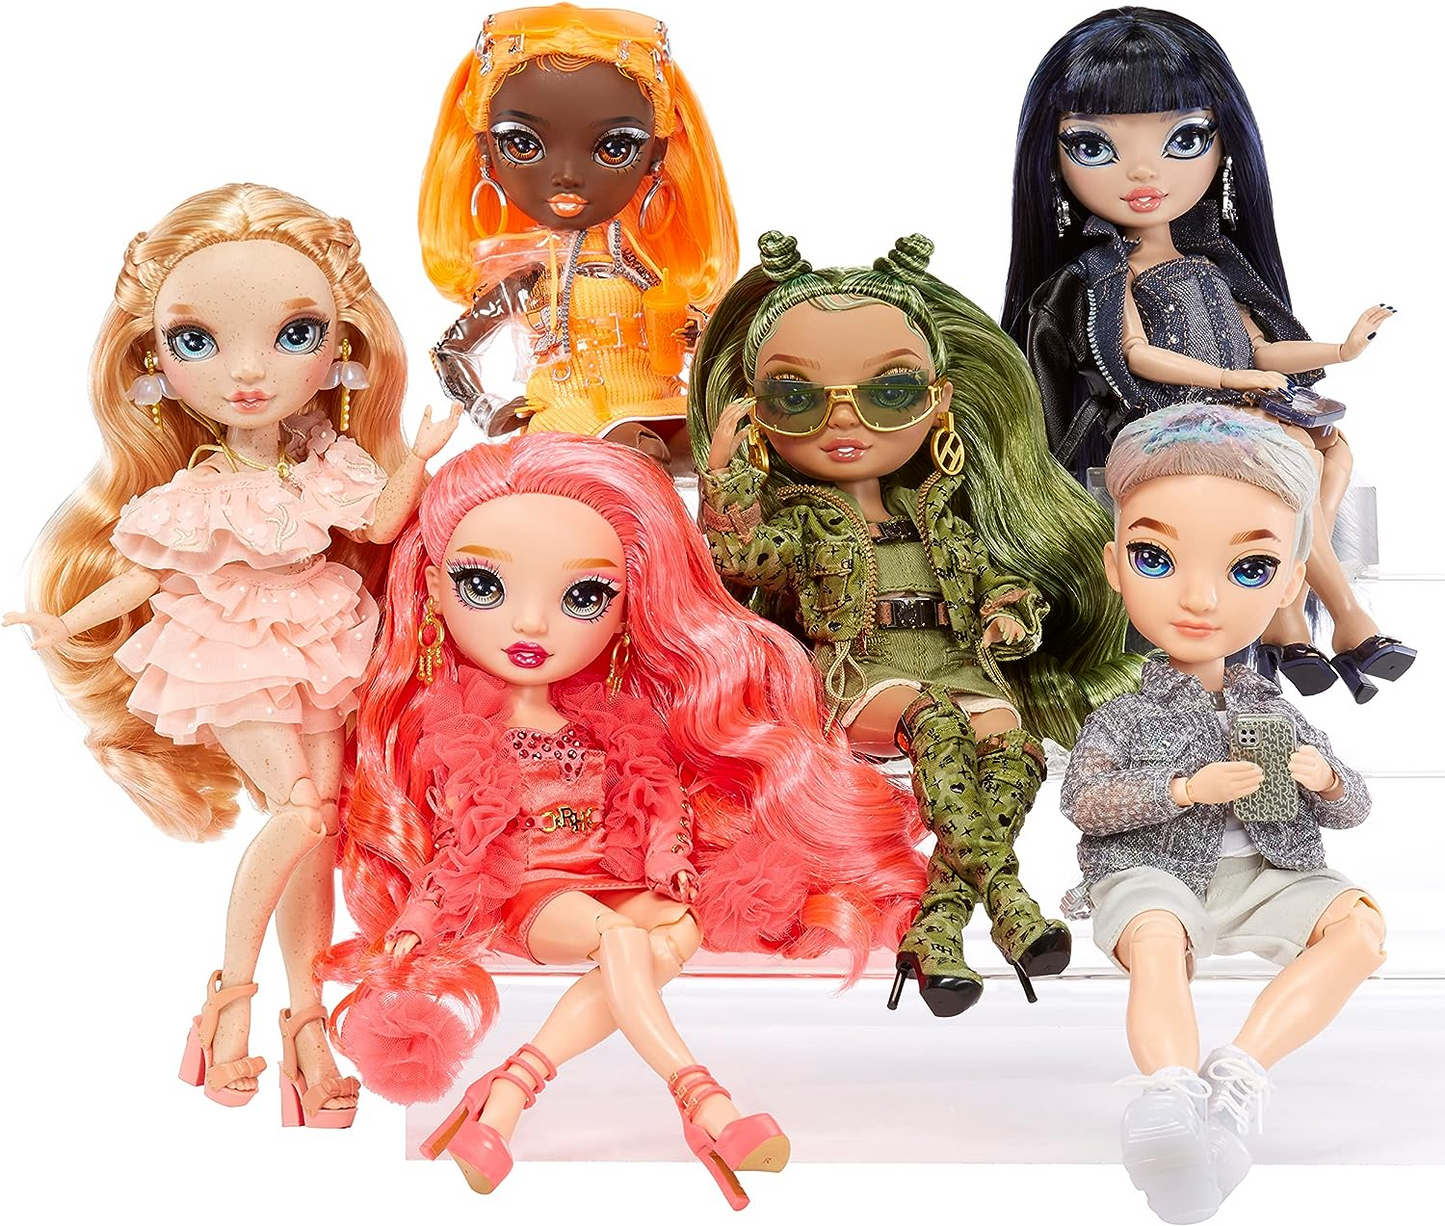 Rainbow High Boneca da moda - PRISCILLA PEREZ - Boneca rosa - Roupa da moda e mais de 10 acessórios coloridos para brincar - Para colecionadores e crianças de 4 a 12 anos